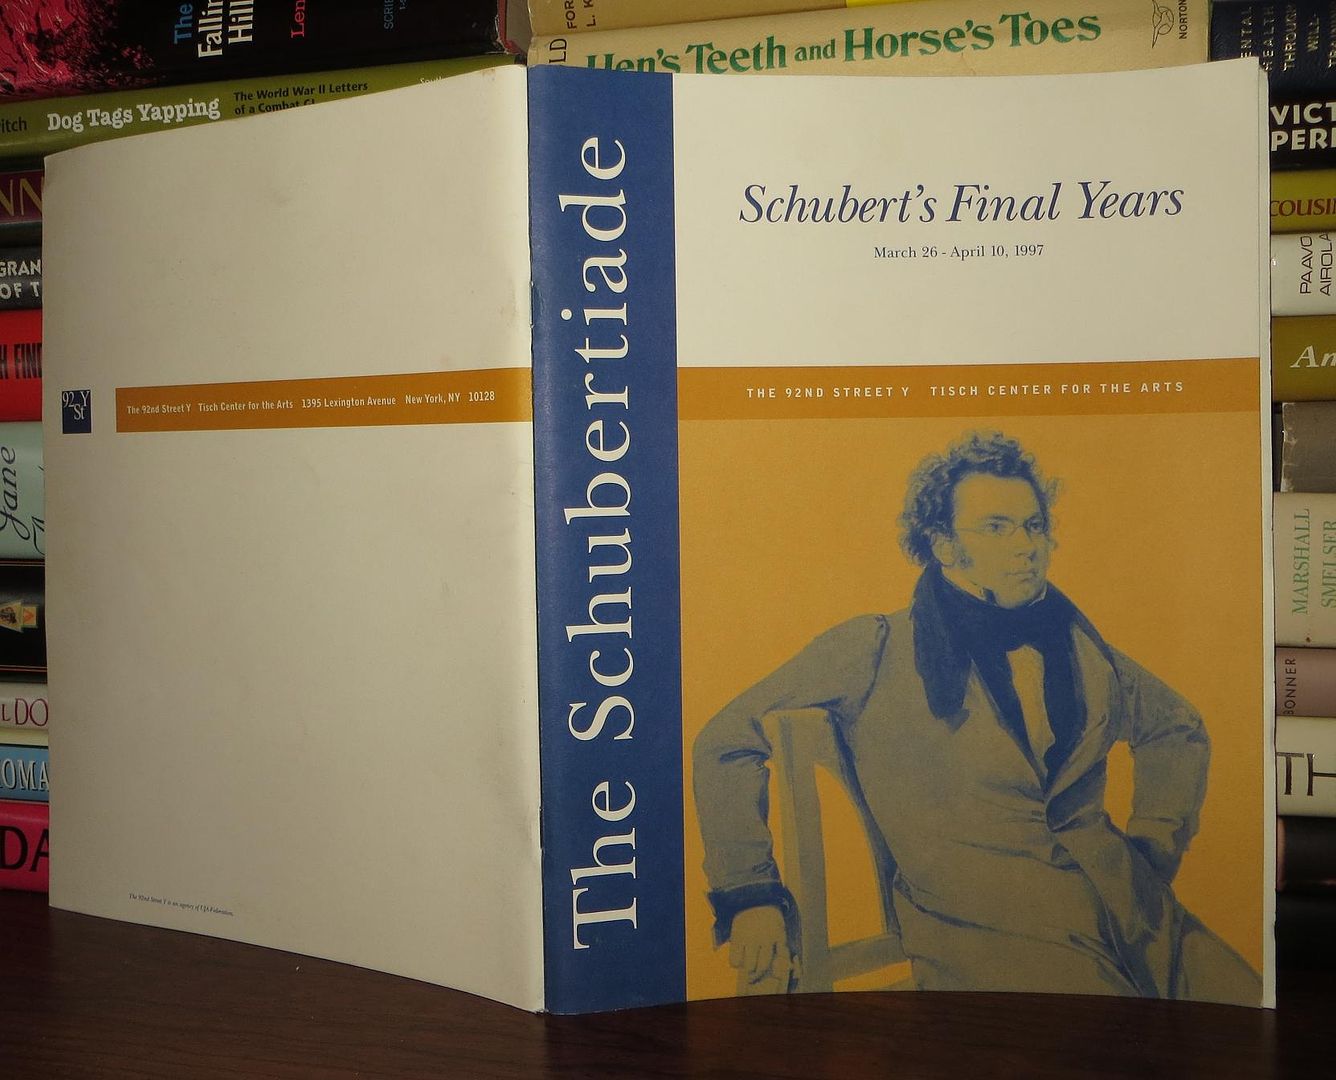 HIRSHBEIN, OMUS, ET AL - The Schubertiade Schubert's Final Years